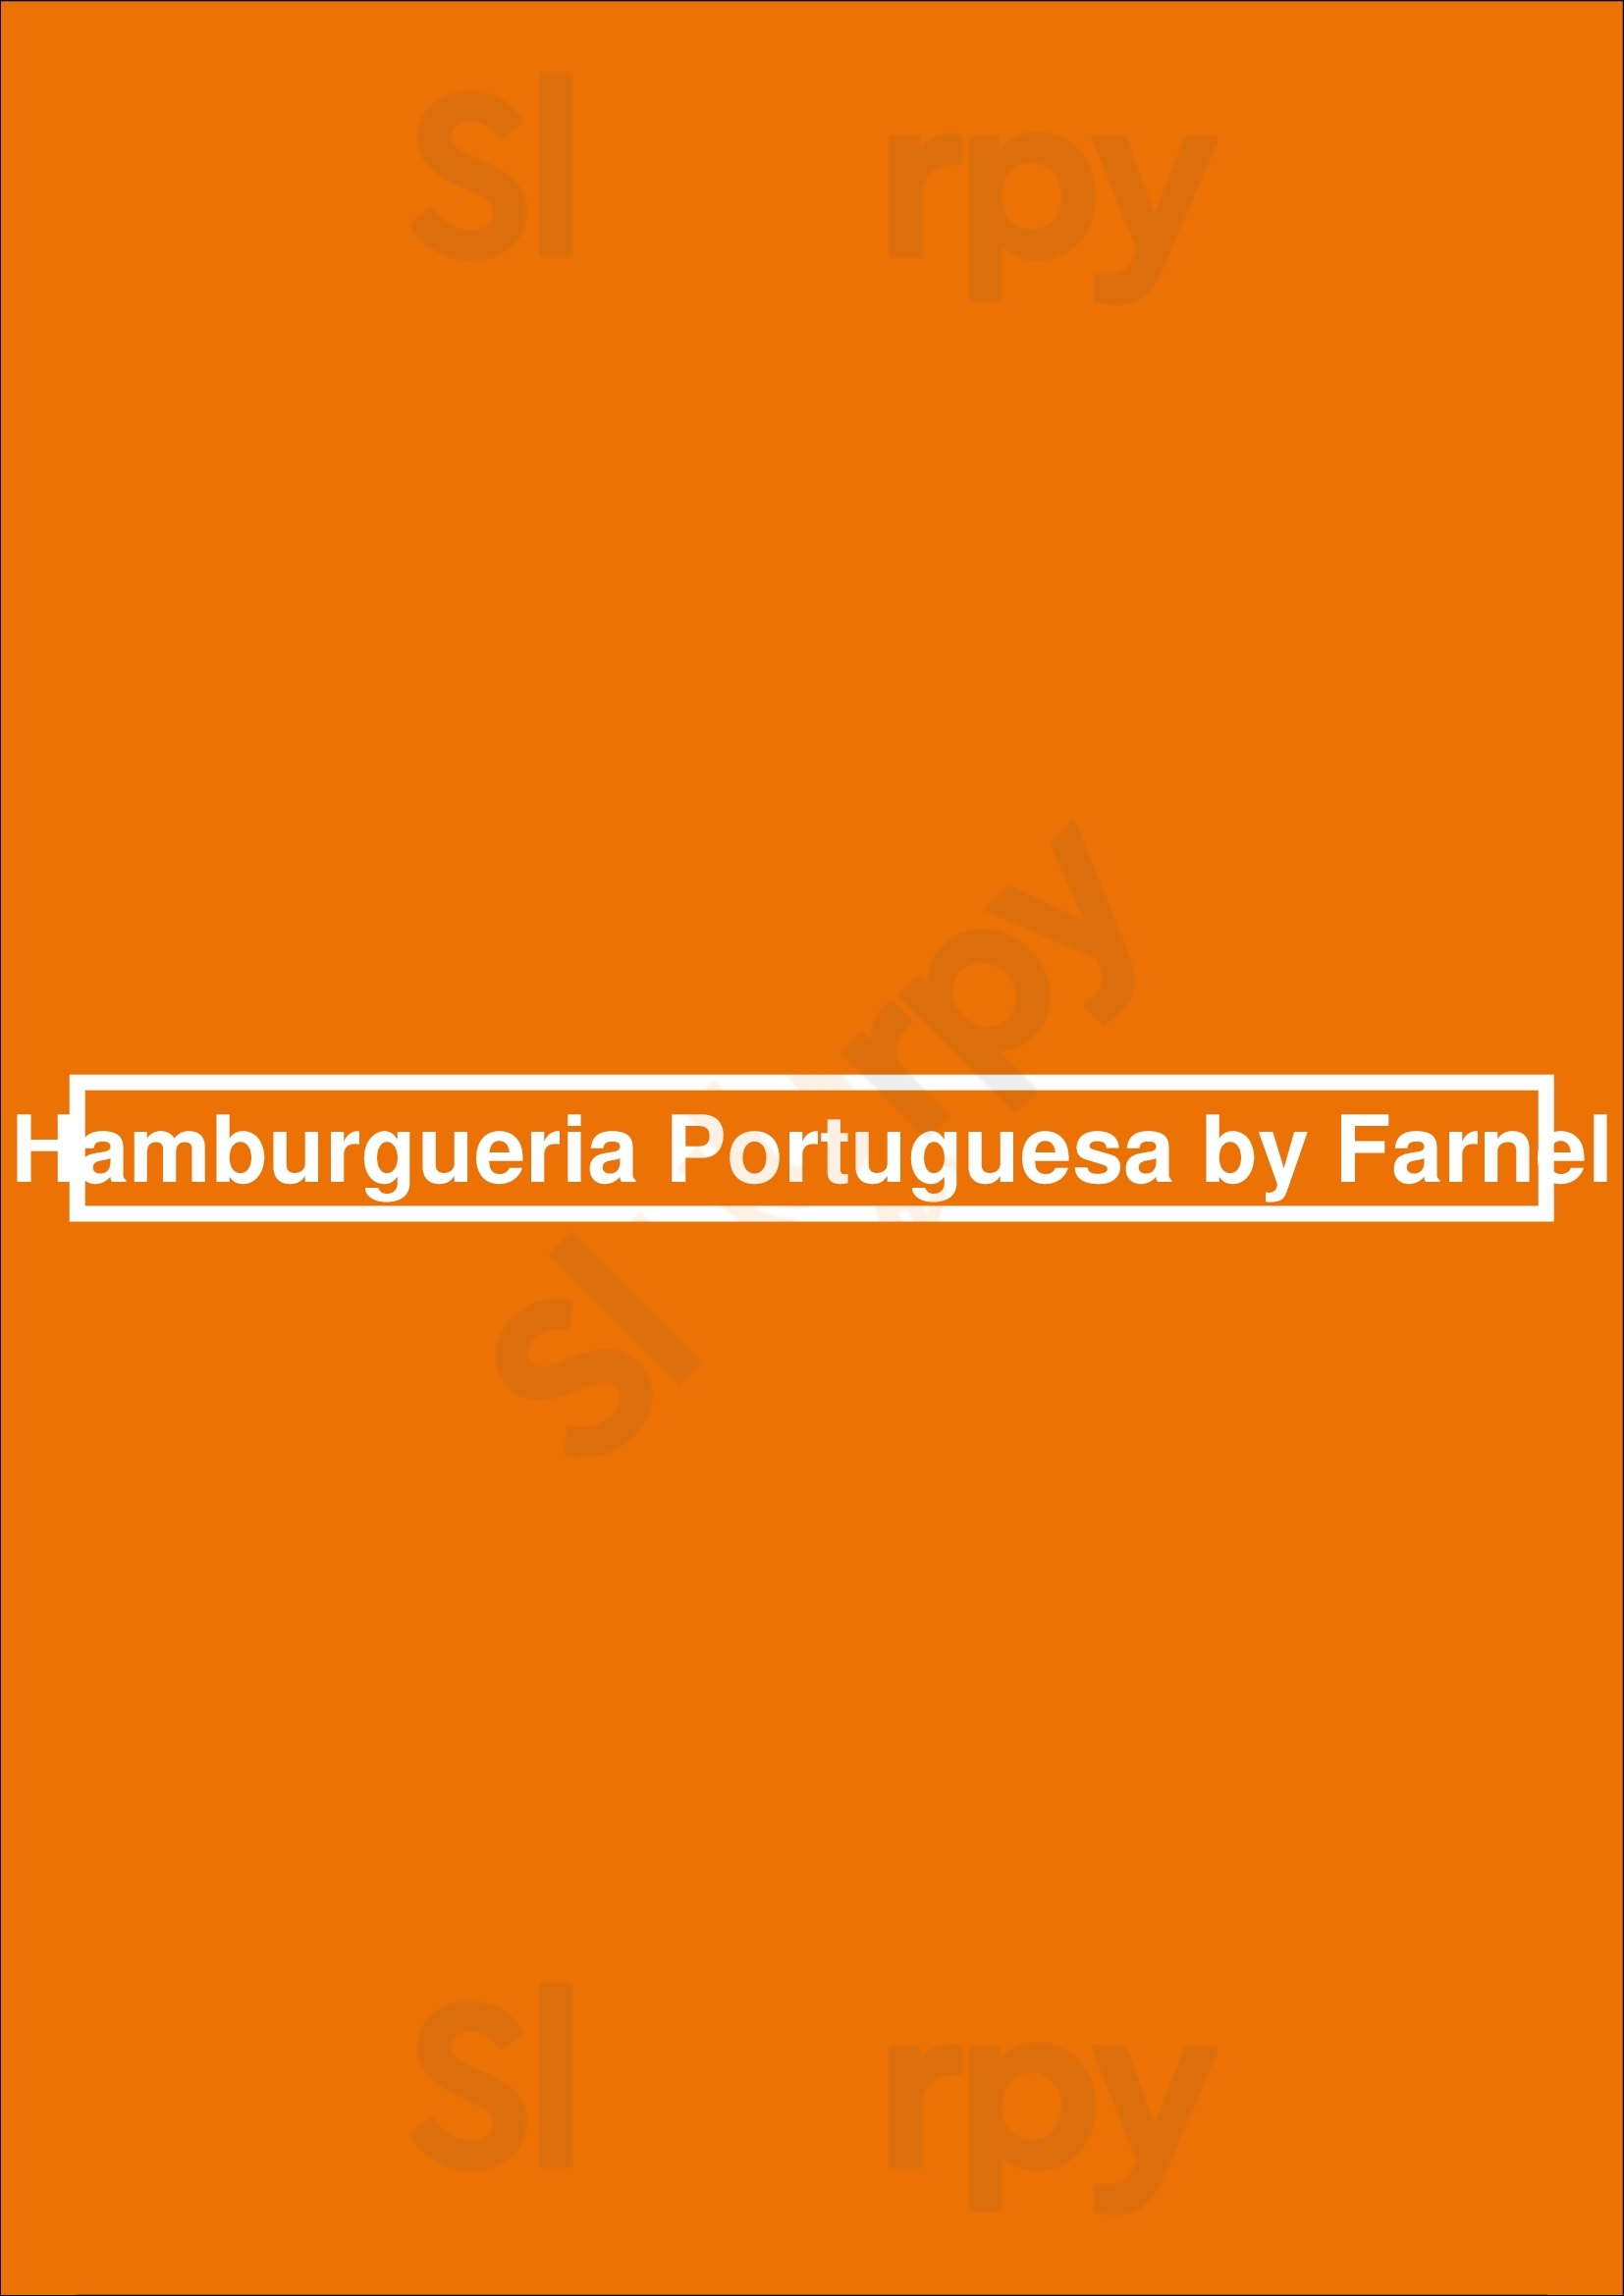 Hamburgueria Portuguesa By Farnel Alcochete Menu - 1